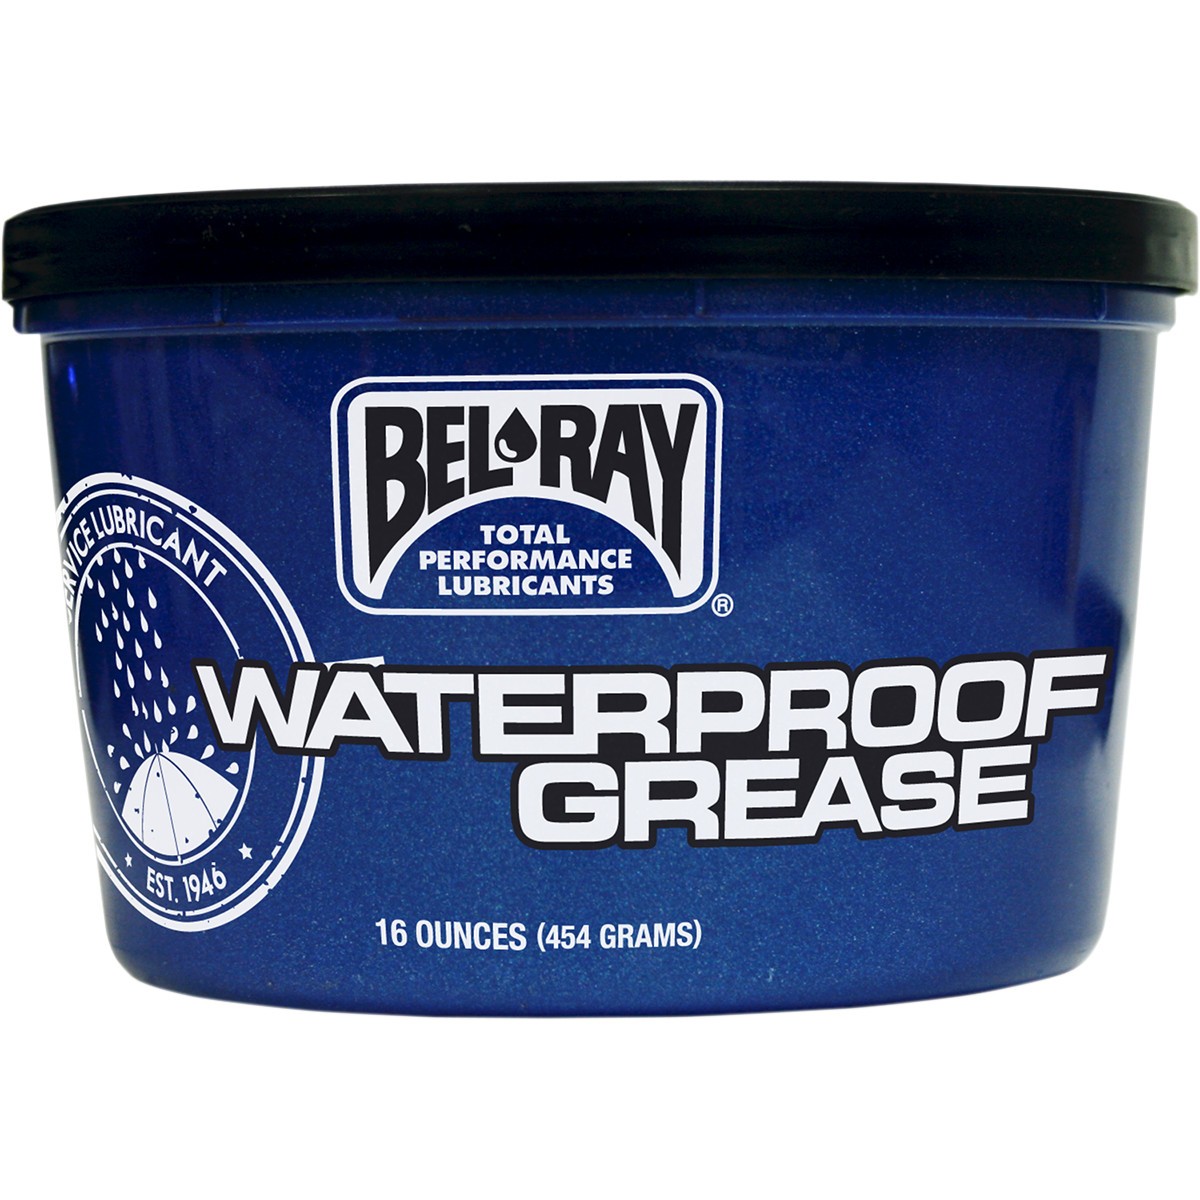 waterproof-grease-16oz-new.jpg